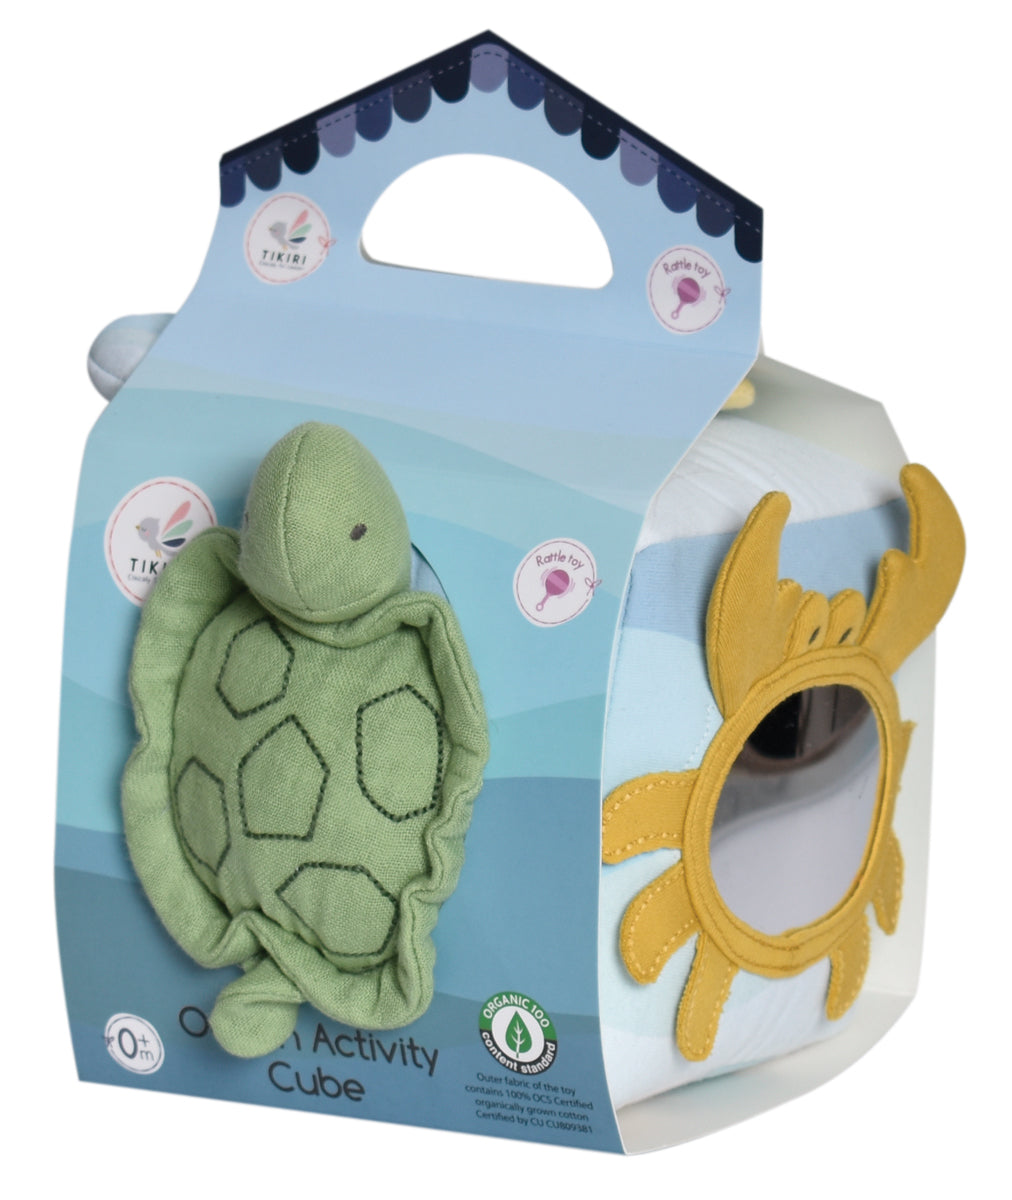 Jouet d'éveil pour bébé en tissu, produit de manière écoresponsable et durable, dans un packaging recyclable. Cadeau de naissance idéal, jouet d'éveil premier âge utilisable dès la naissance.